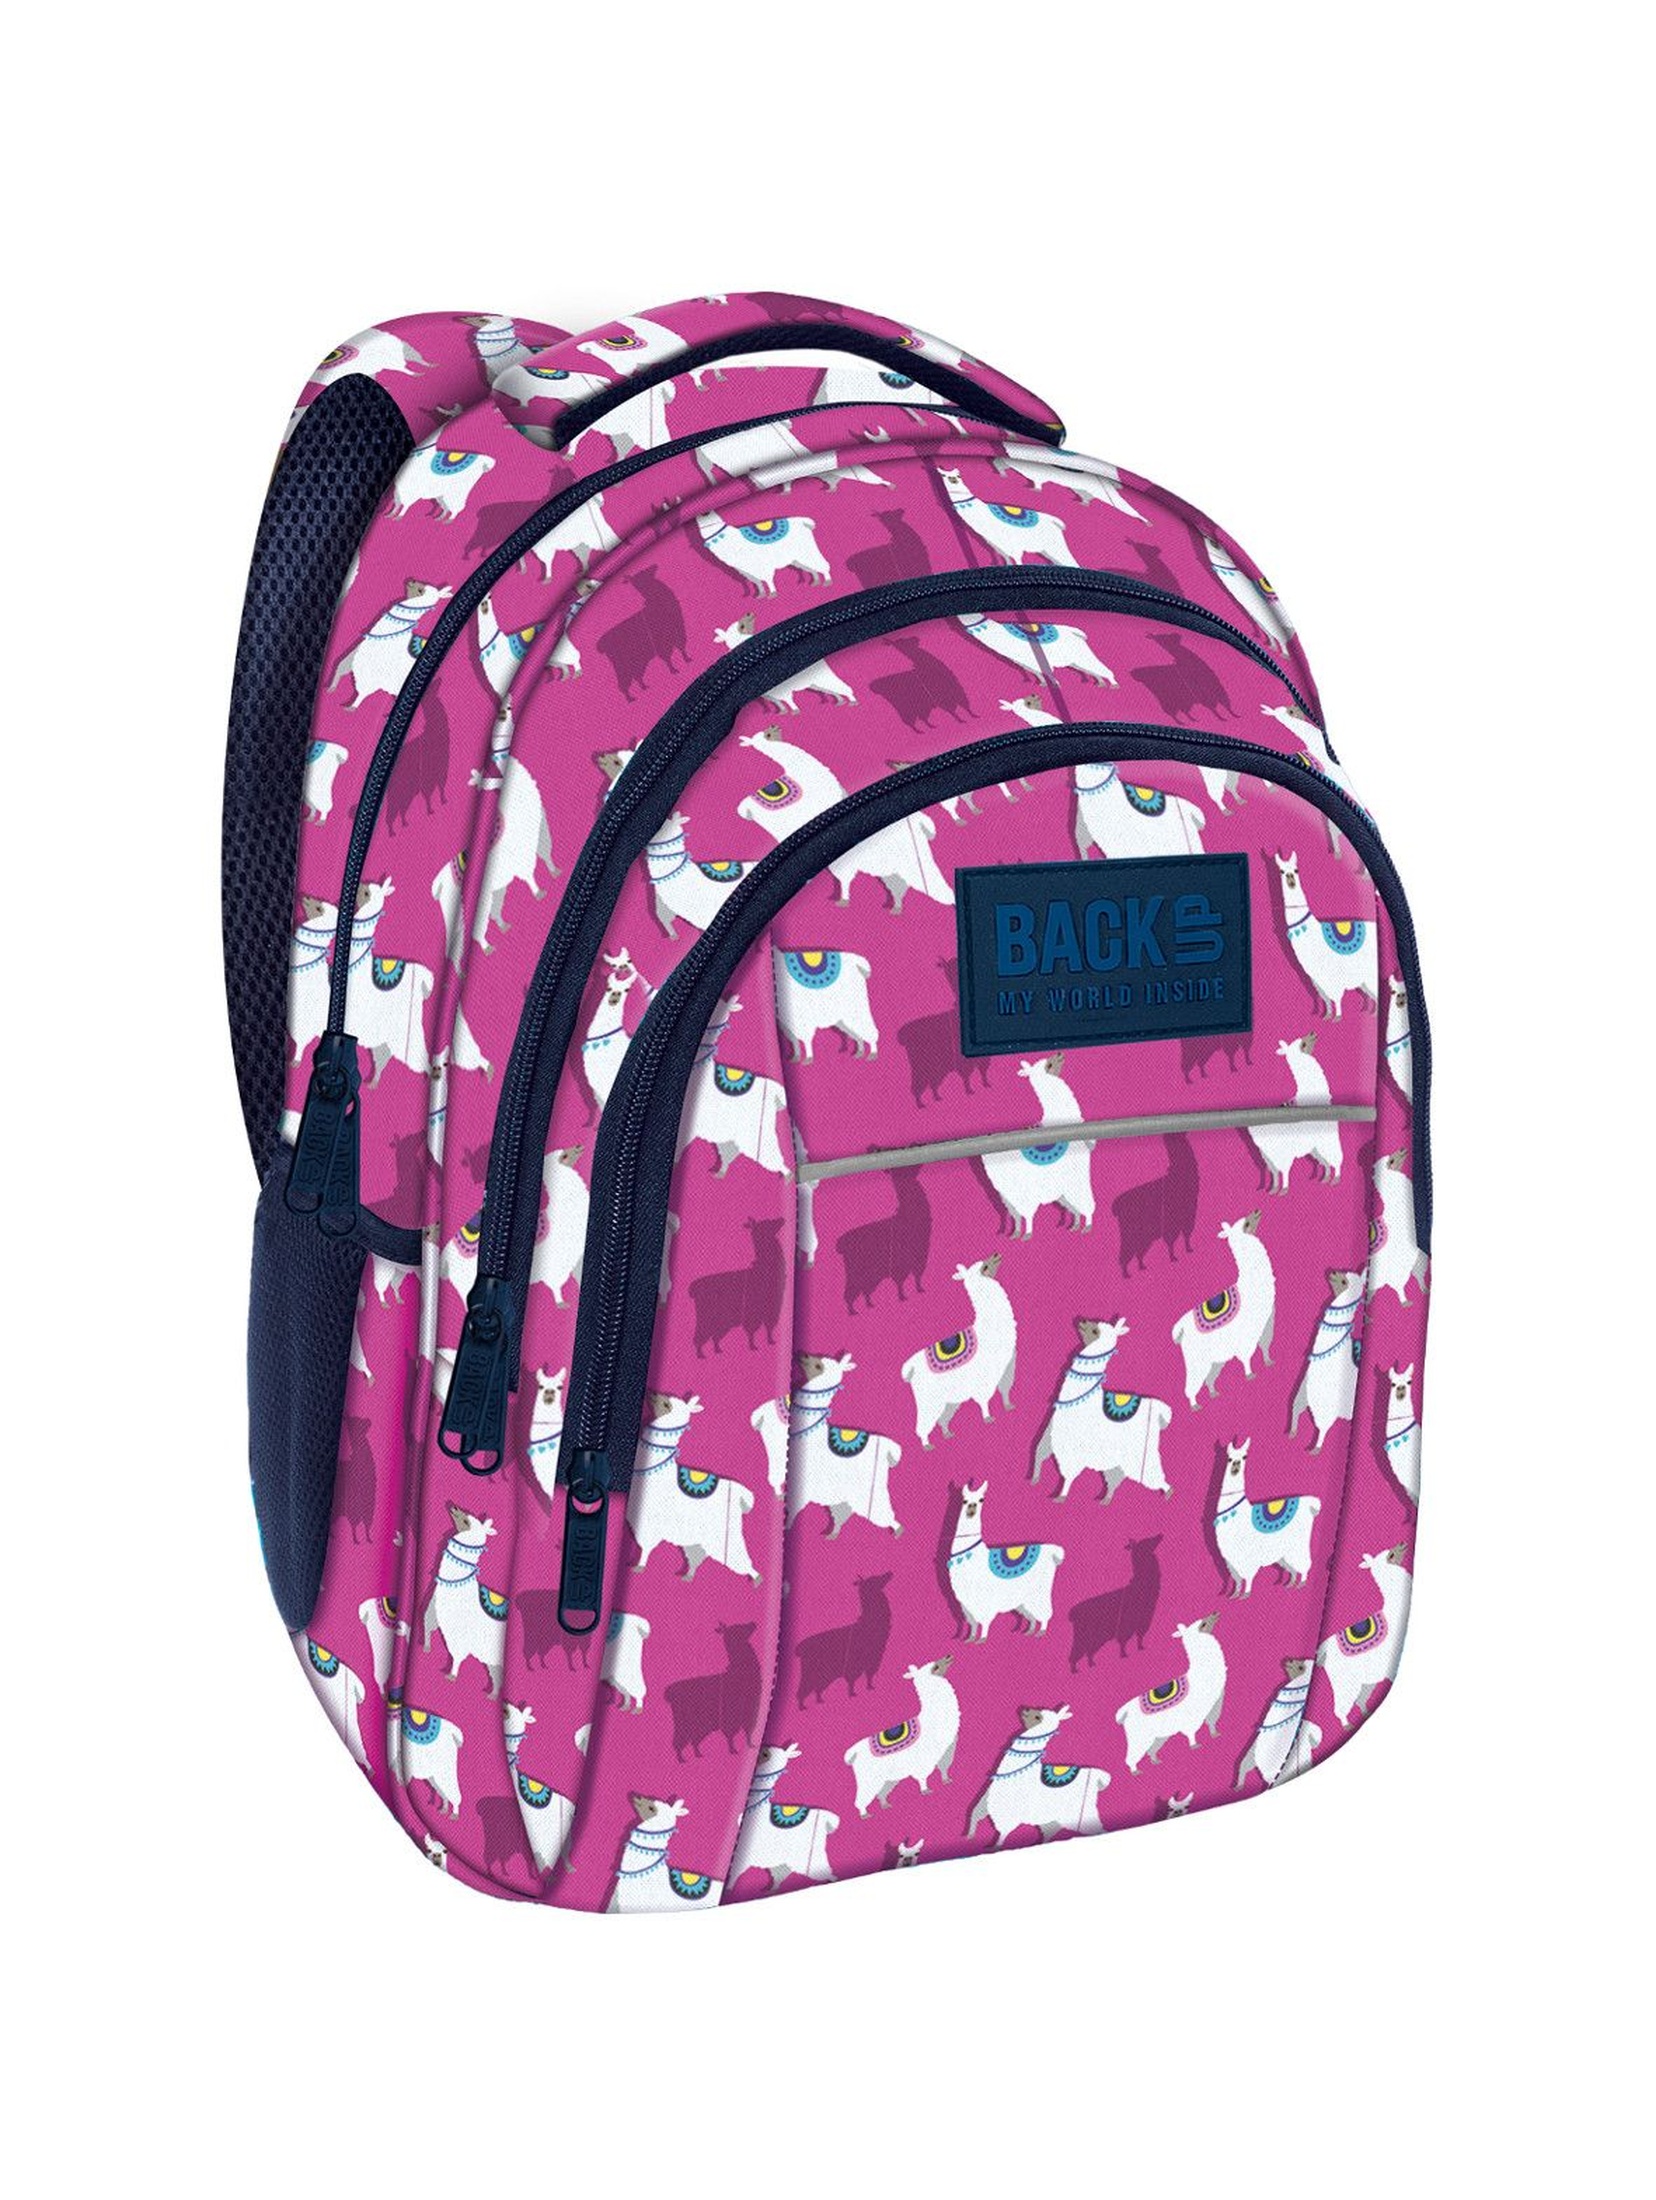 Plecak dziewczęcy w lamy różowy 3komorowy BackUp